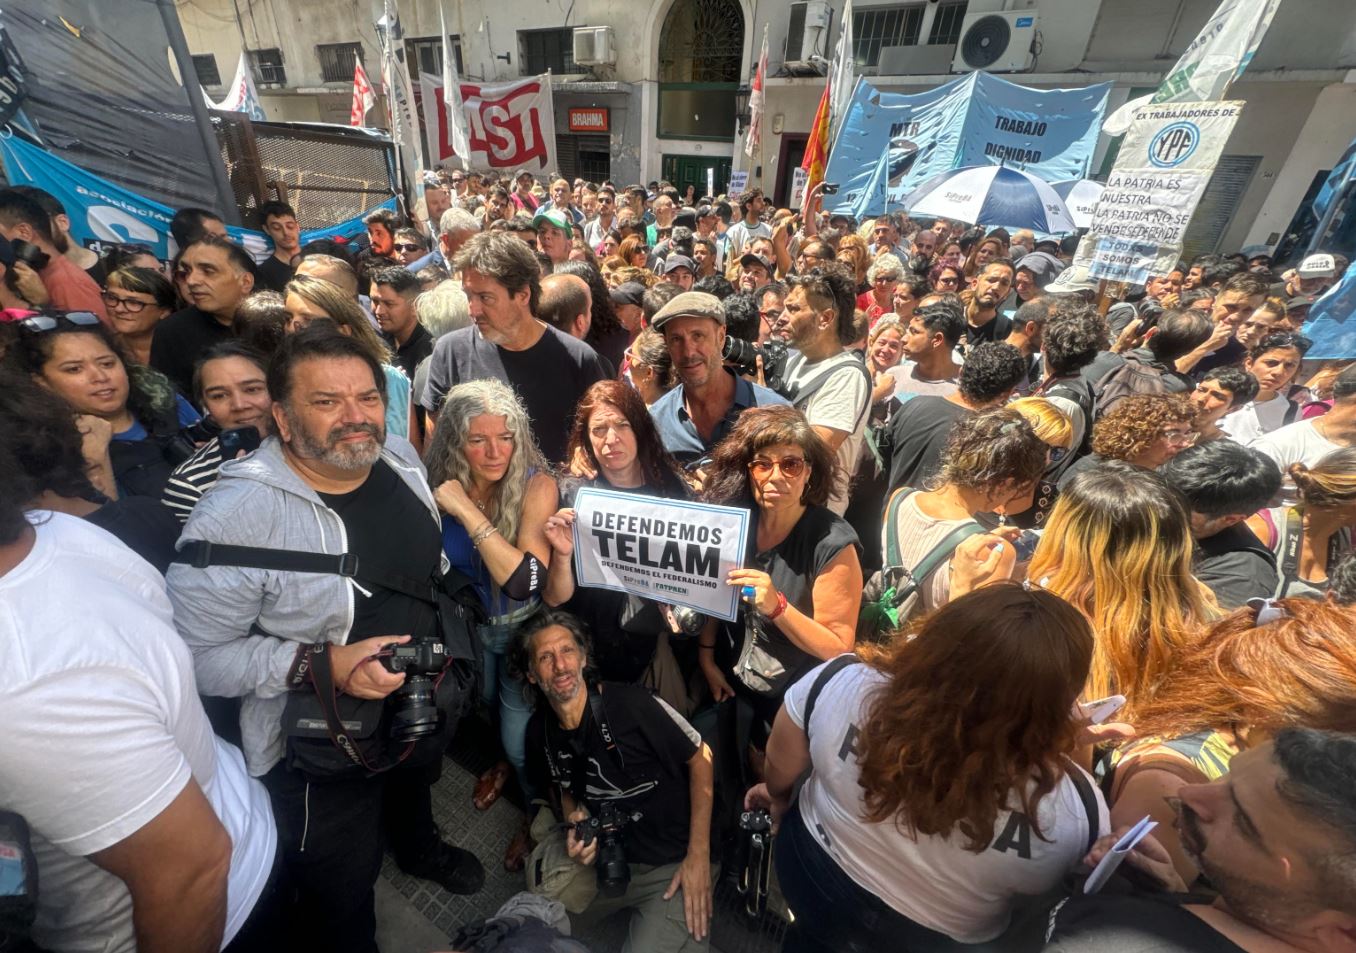 I lavoratori si sono riuniti in un "abbraccio" simbolico per difendere i media pubblici come Telam